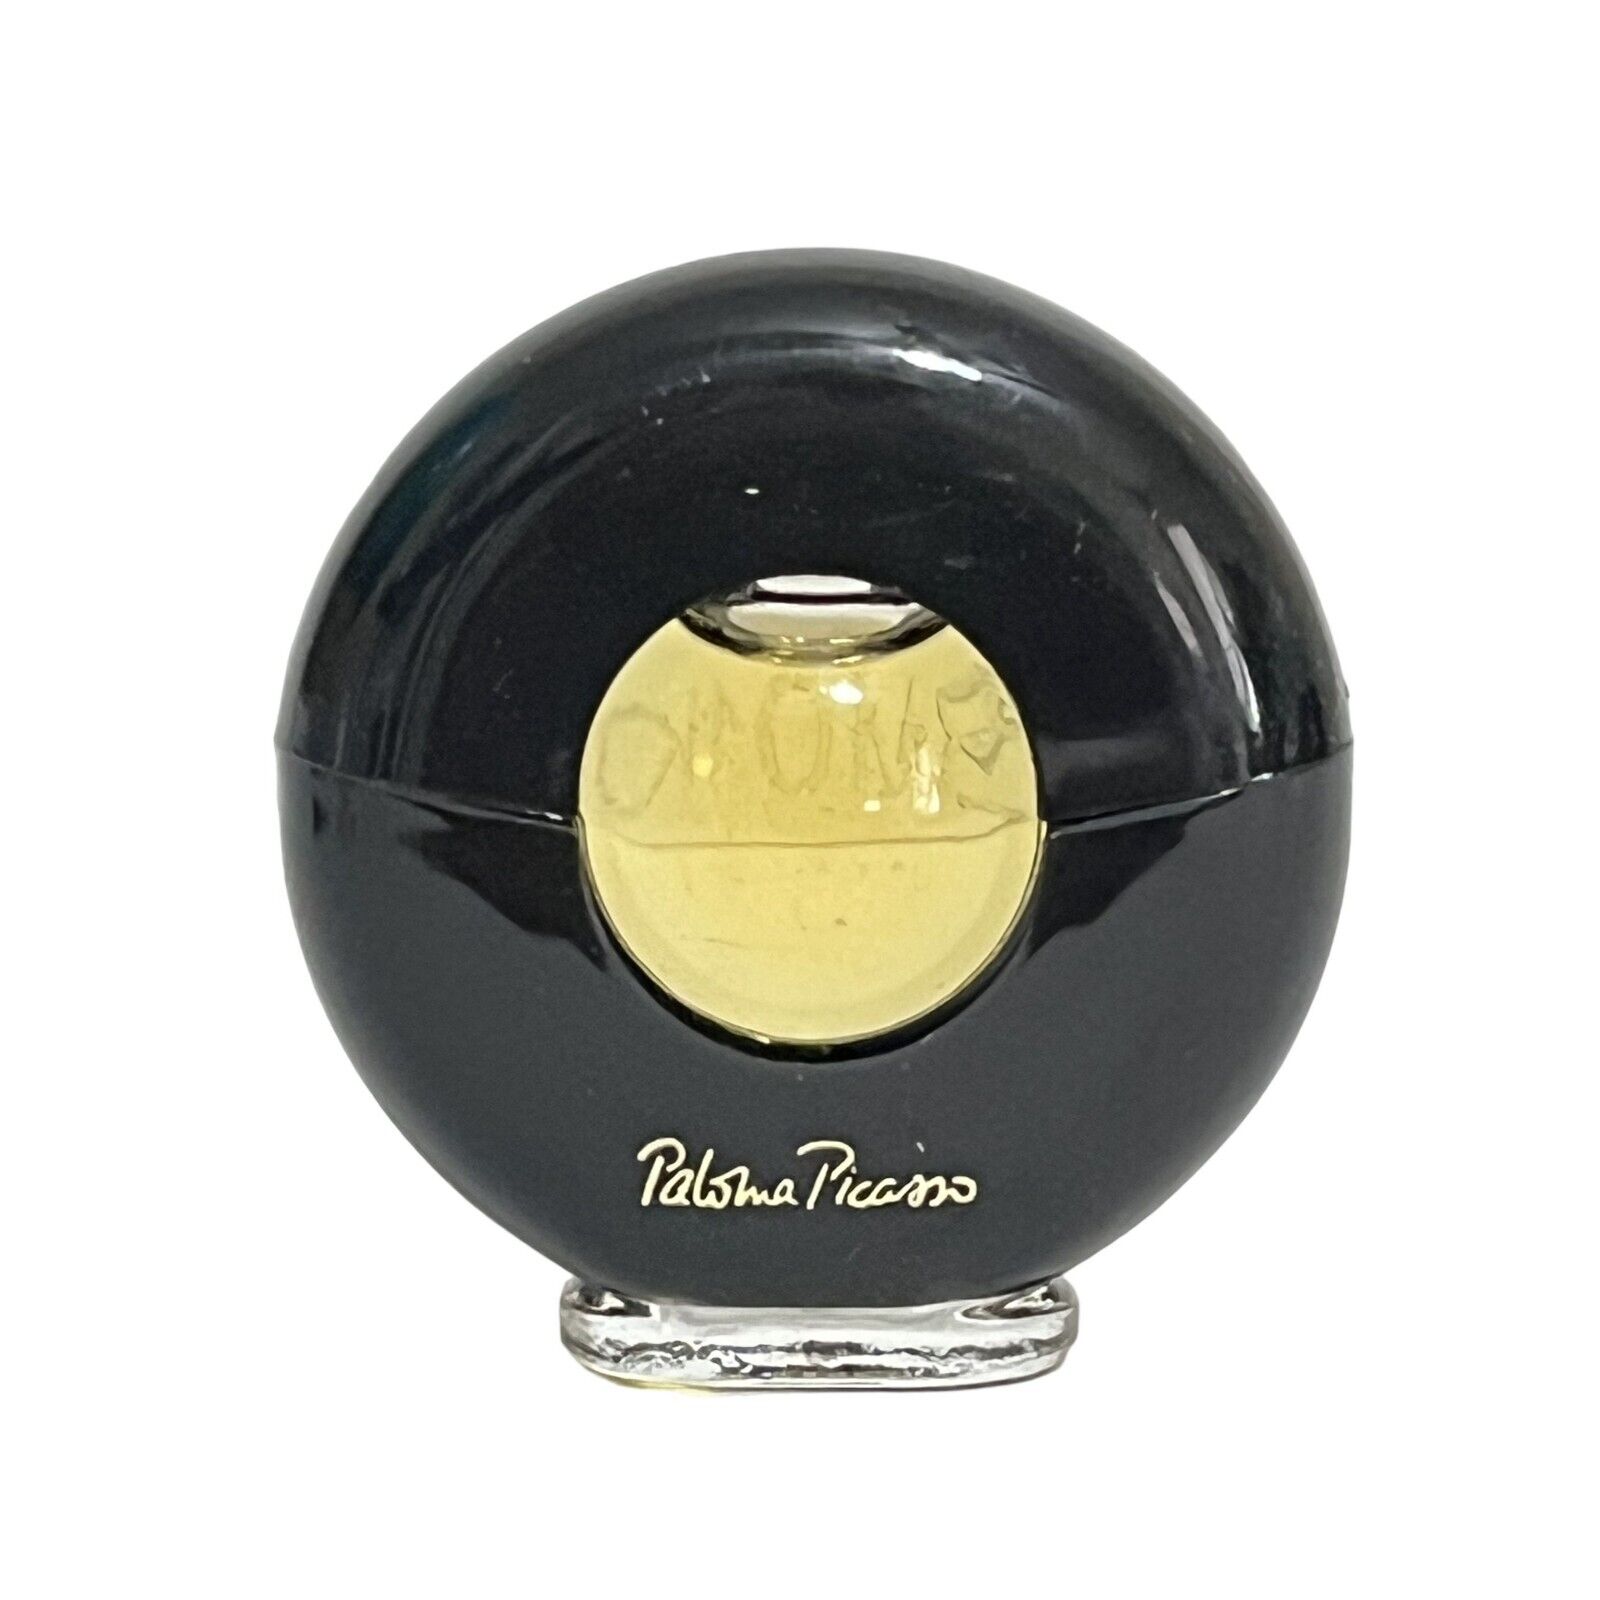 Vintage Paloma Picasso Miniature Perfume .16oz /5ml NEW Travel Size